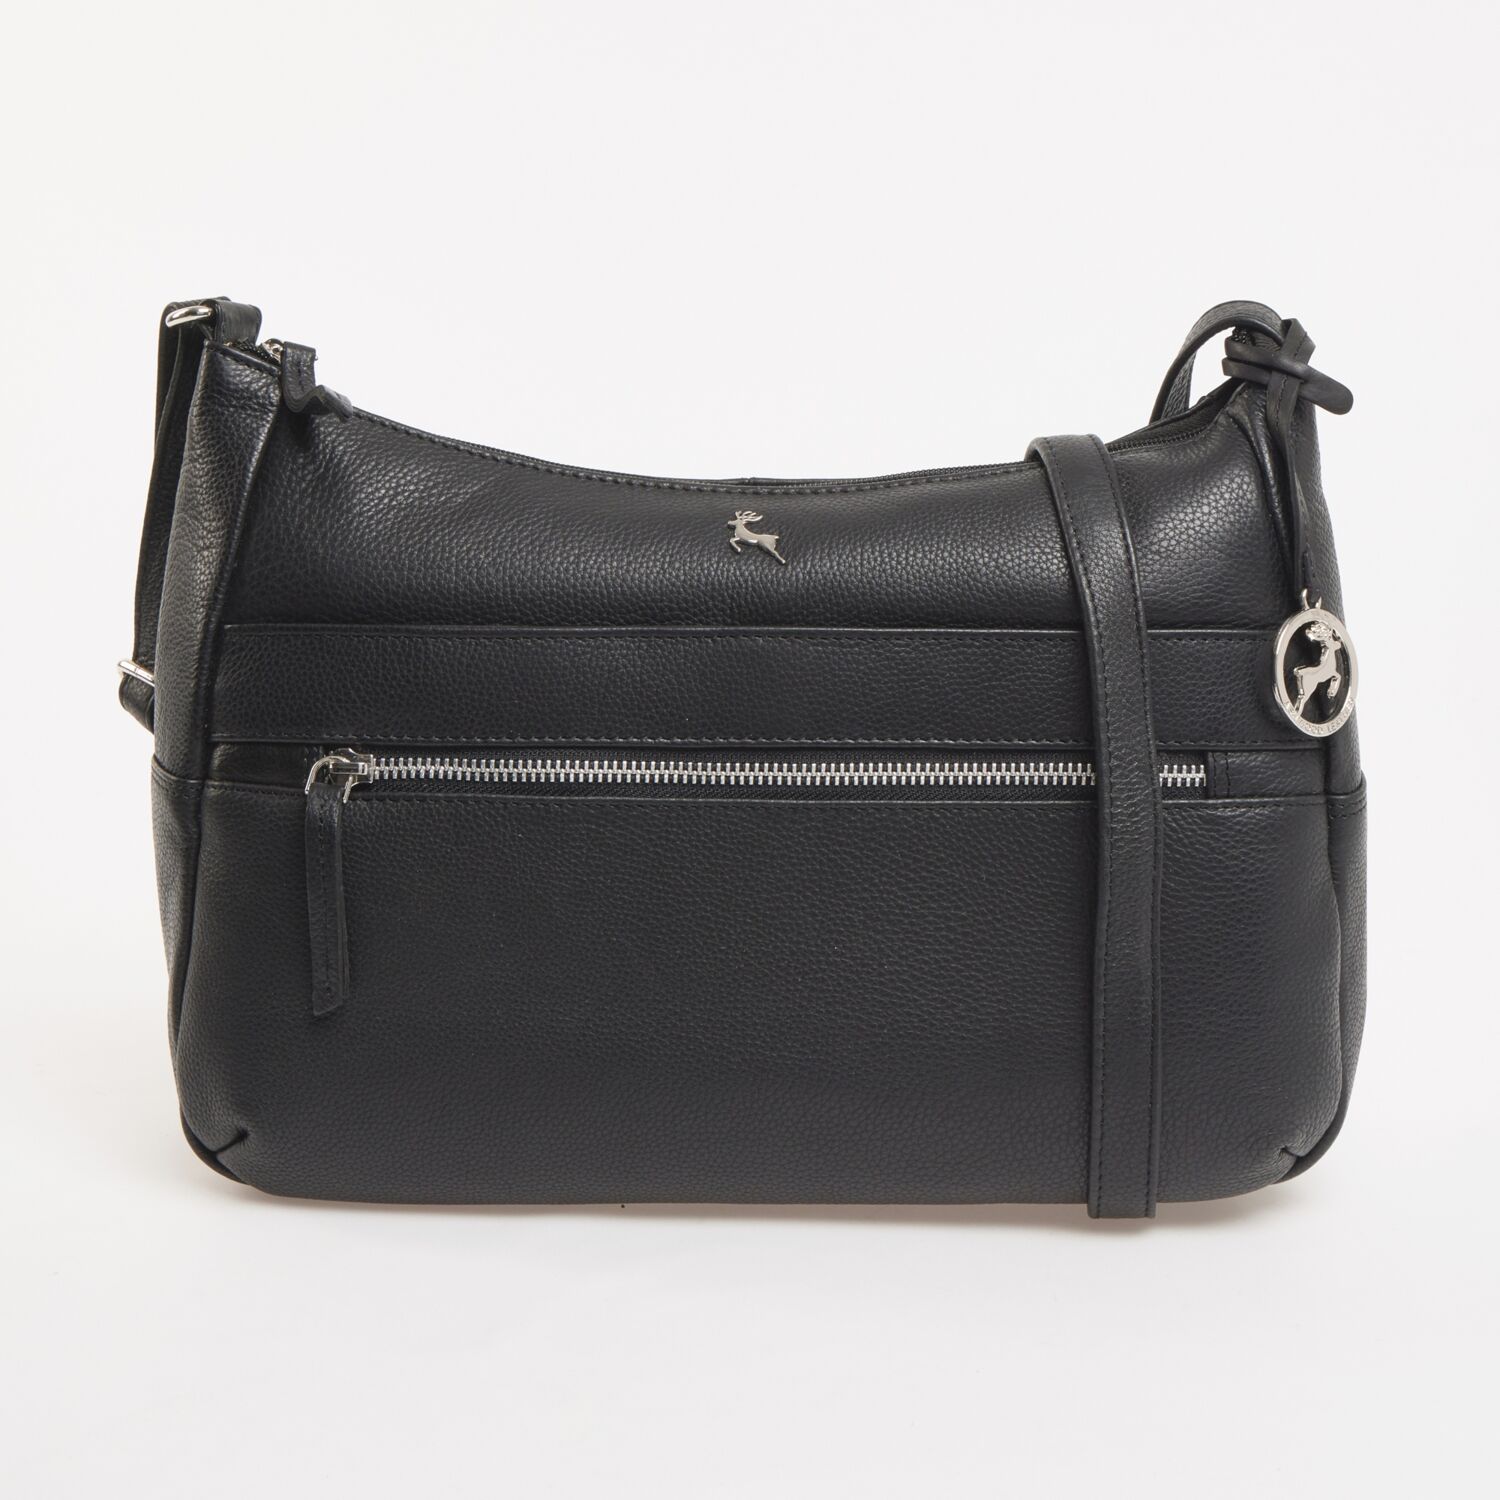 Womens Crossbody Bags - Leather Crossbody Bags - TK Maxx UK